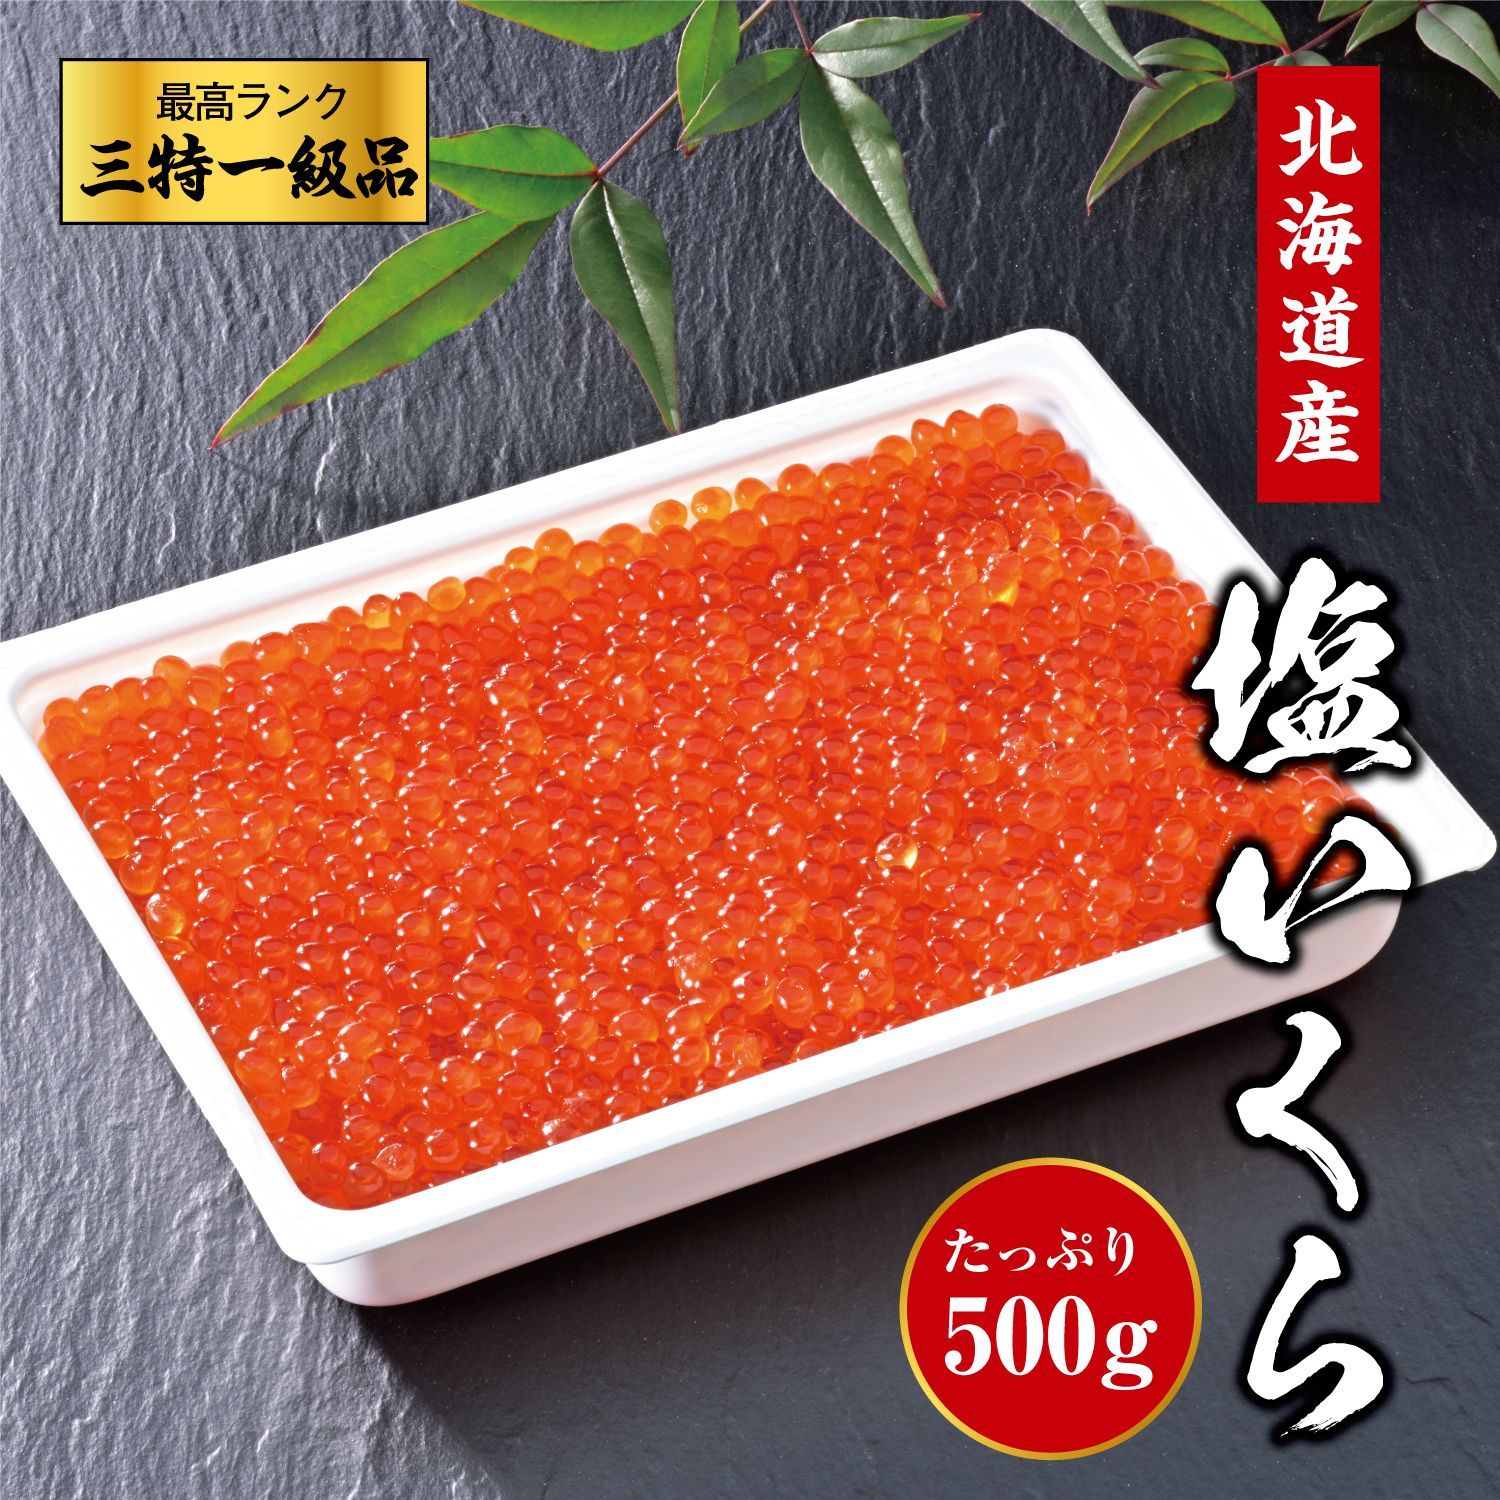 北海道産 3特 塩いくら 500g 豊洲 最高級 3特品 国産 冷凍 鮭いくら